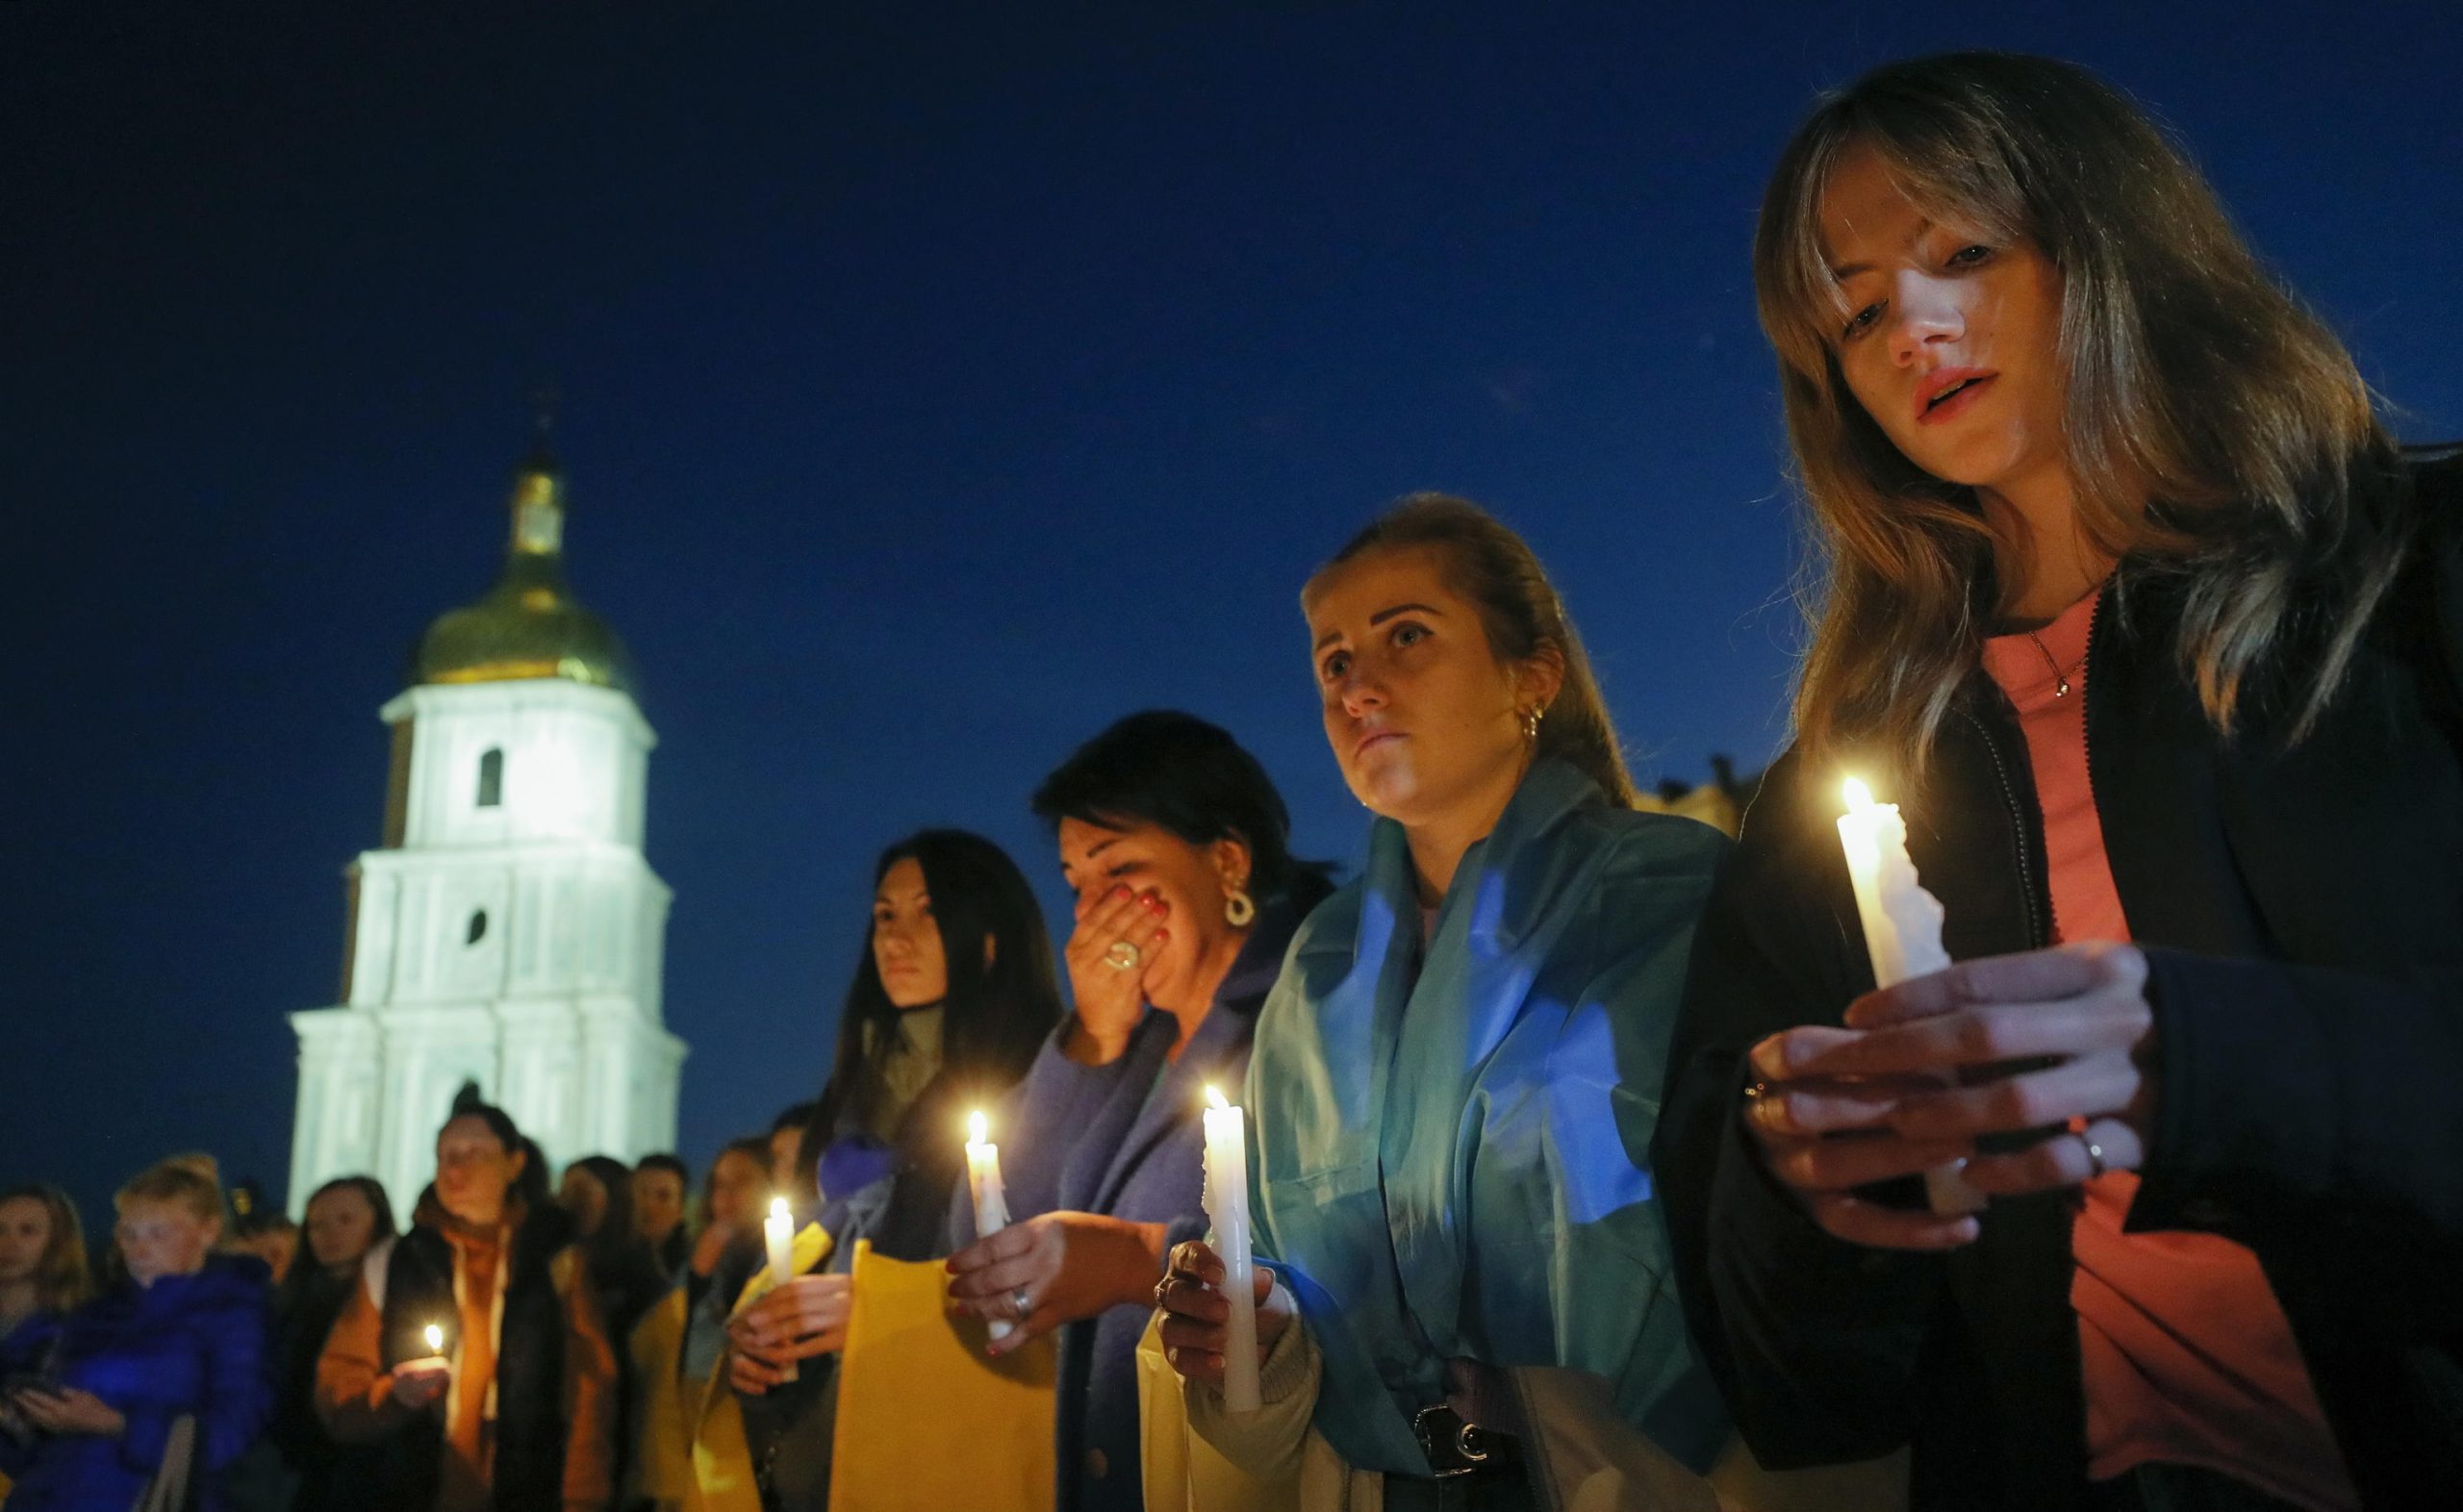 Diverse persone reggono candele accese in memoria delle vittime del centro di Olenivka